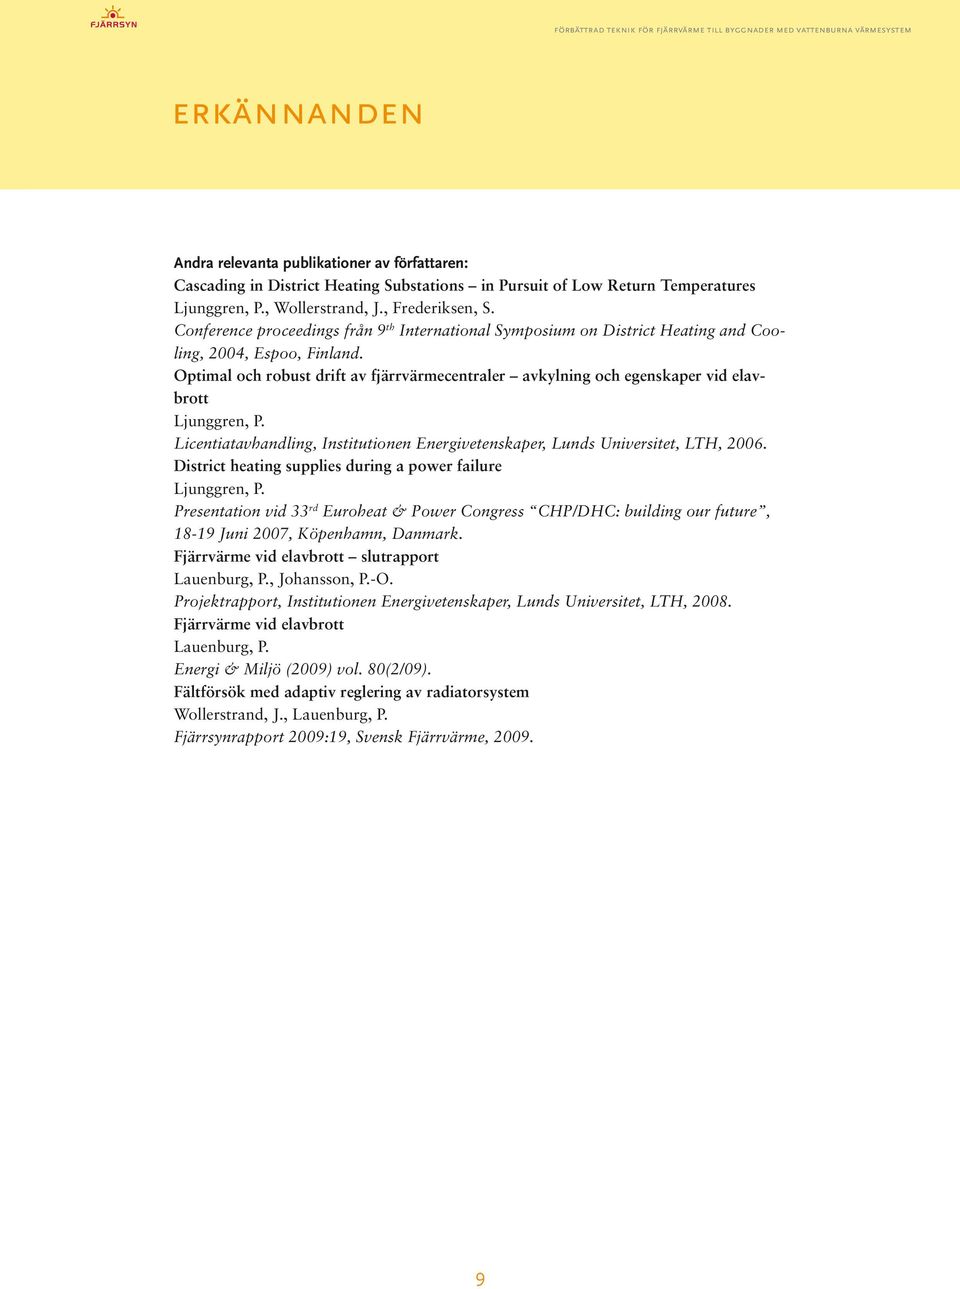 Optimal och robust drift av fjärrvärmecentraler avkylning och egenskaper vid elavbrott Ljunggren, P. Licentiatavhandling, Institutionen Energivetenskaper, Lunds Universitet, LTH, 2006.